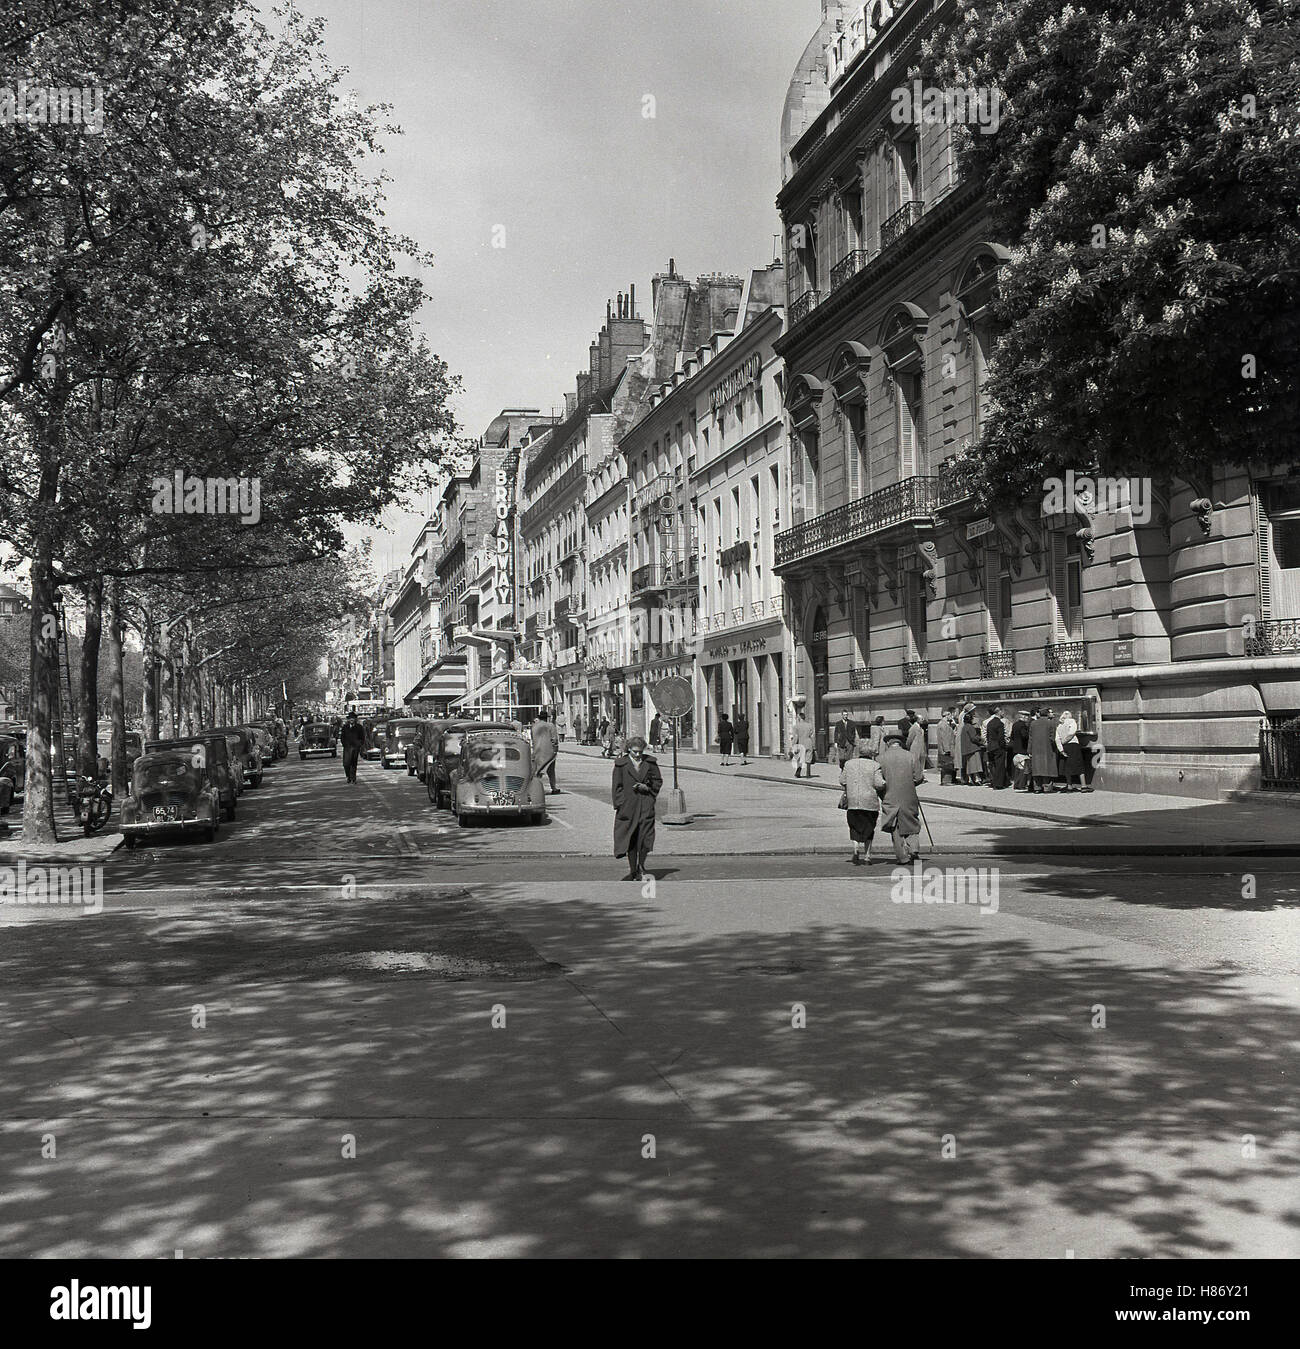 Années 1950, historique, Paris, France, l'ère de l'automobile garée dans une petite rue à côté de l'Avenue des Champs-Elysées, un large boulevard entre la Place de la Concorde et de la la Place Charles de Gaulle où l'Arc de Triomphe est situé. Banque D'Images